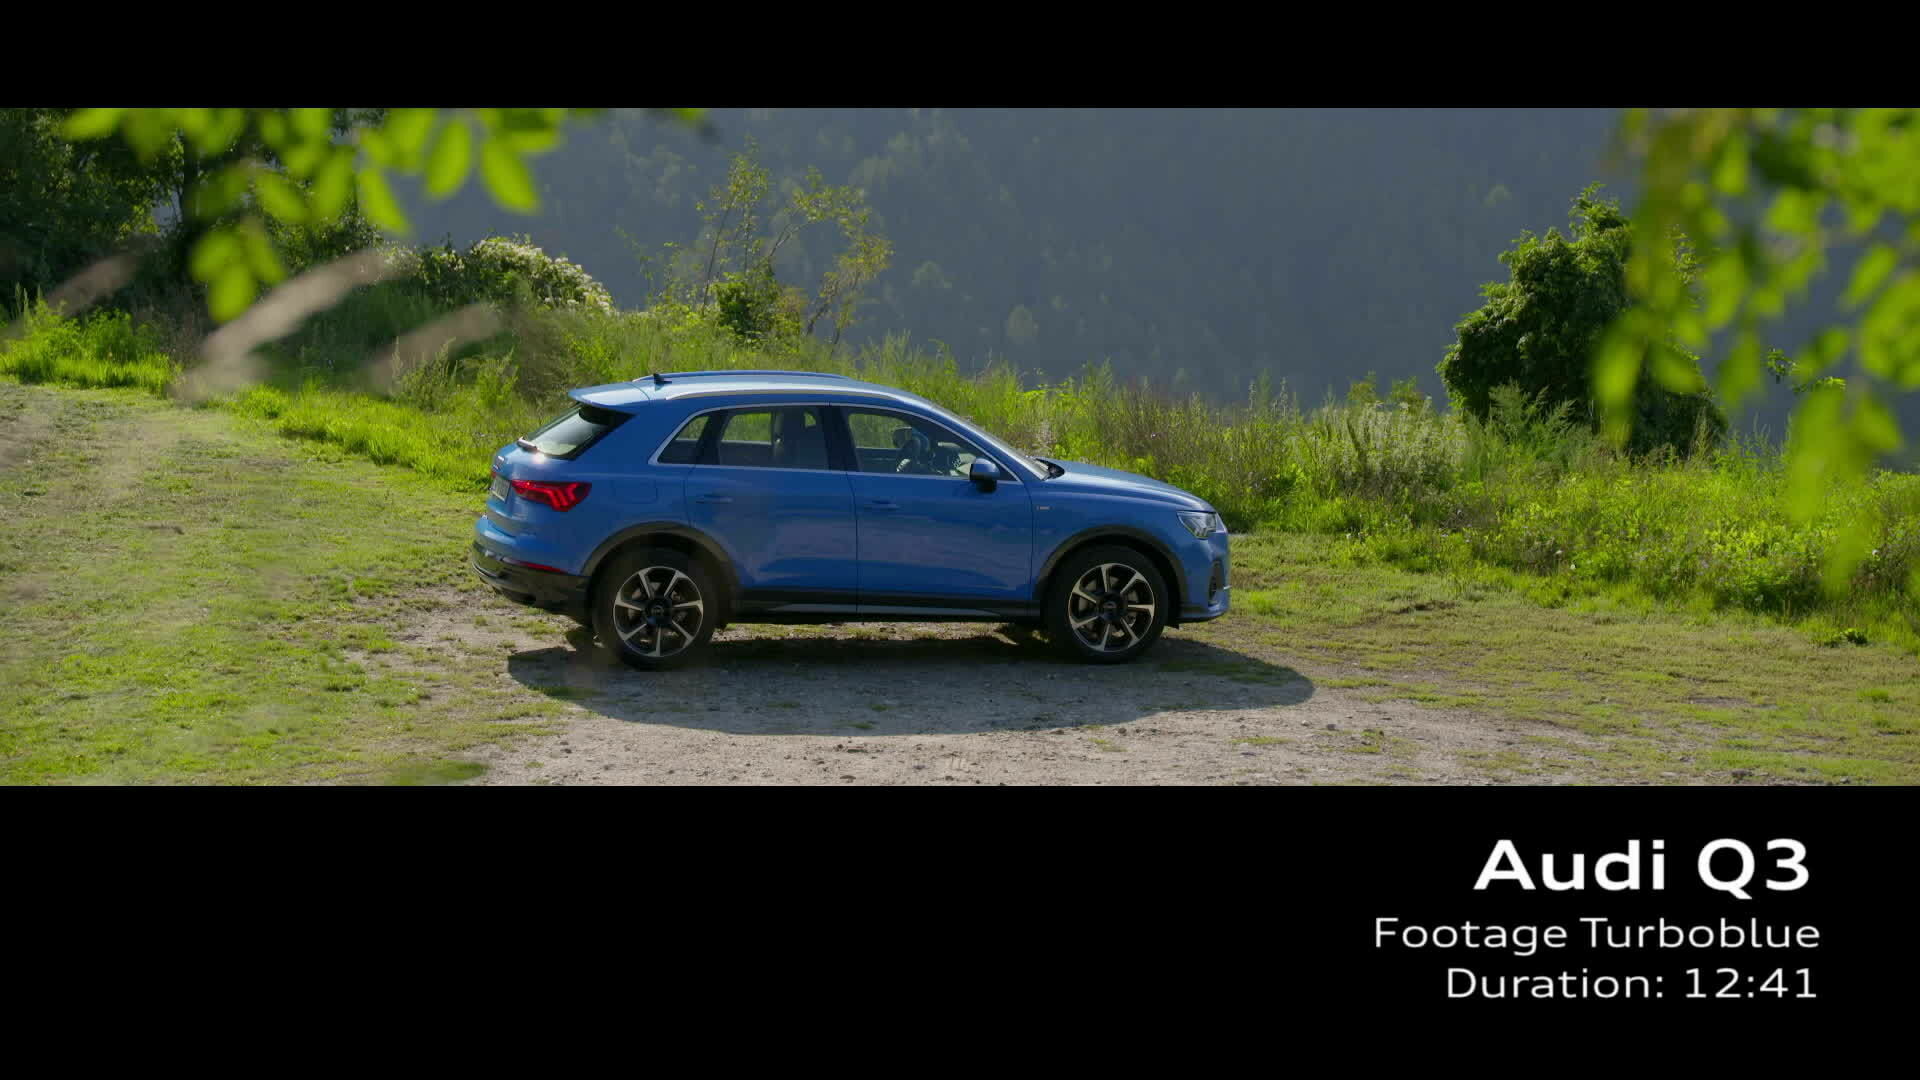 Audi Q3 Footage Turbo blue (2018)